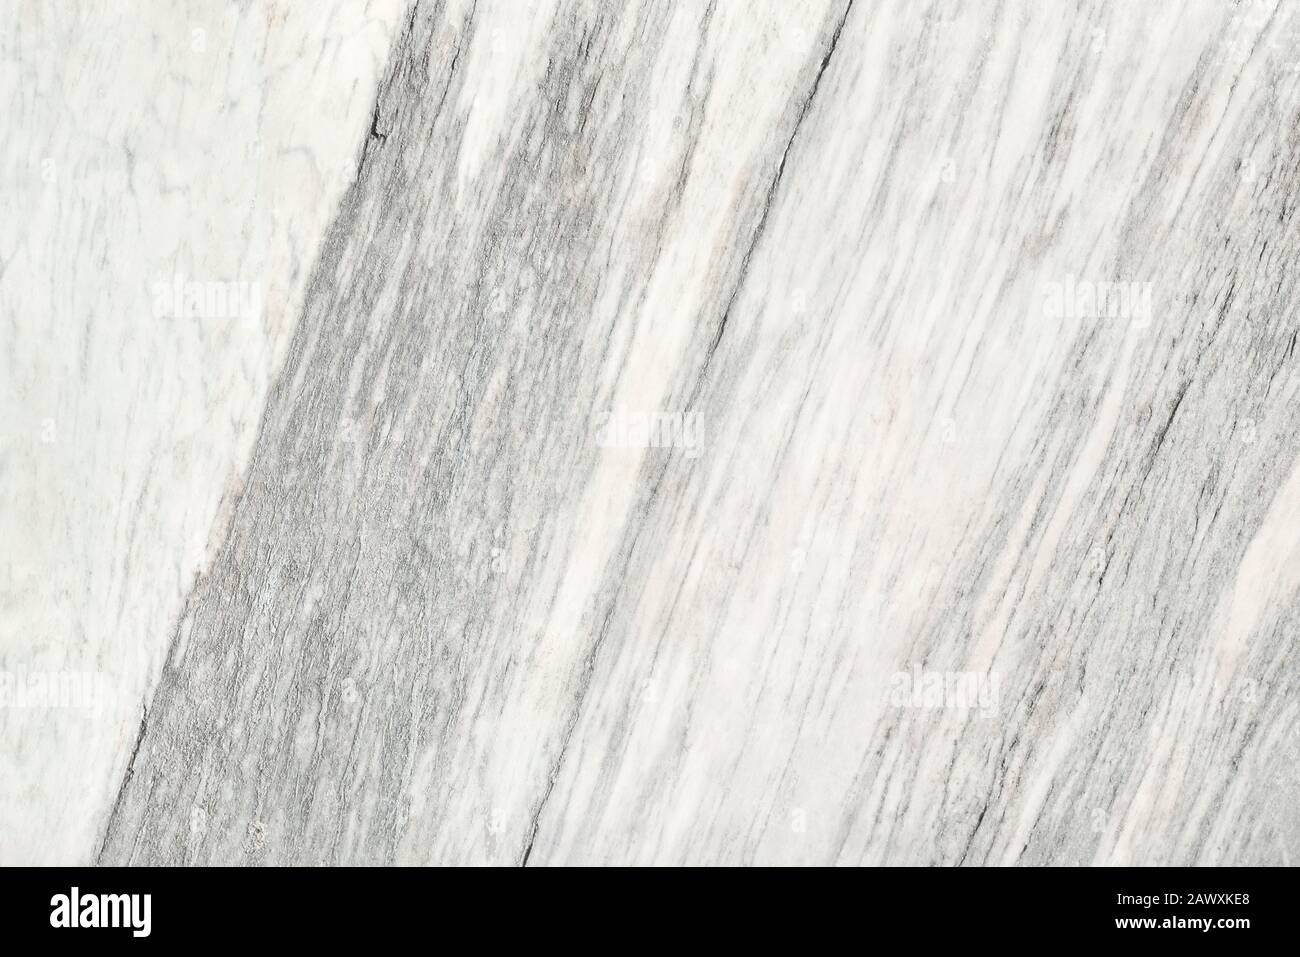 Calcare Beige simili a quelle del marmo superficie naturale per il bagno o la cucina il ripiano del bancone. Alta risoluzione texture e pattern. Foto Stock